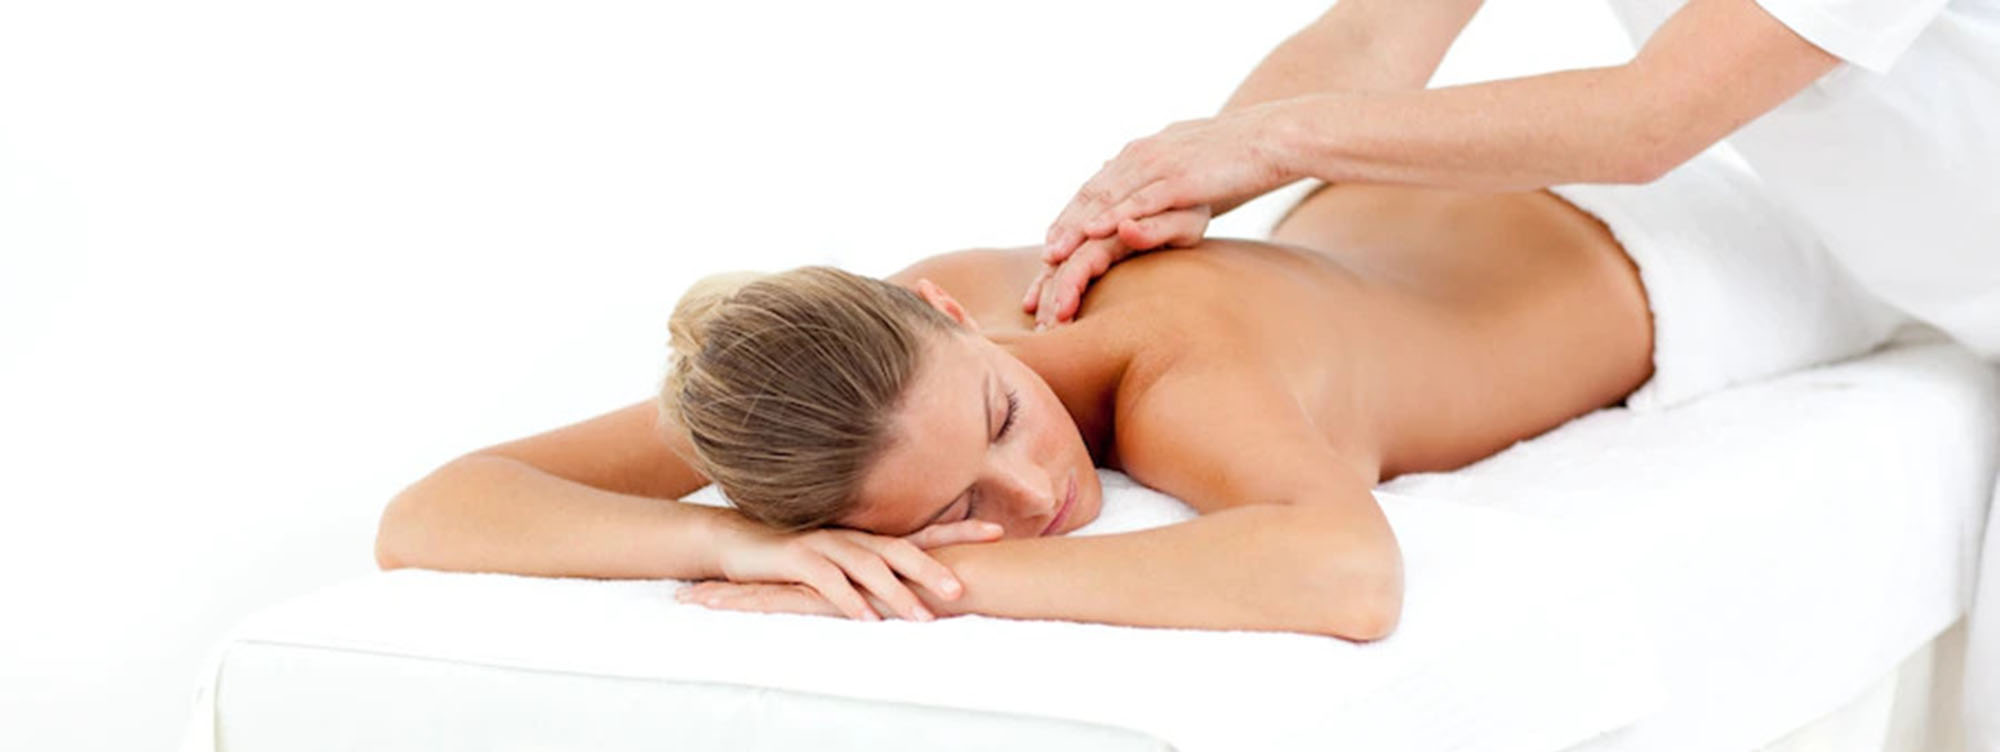 Как делать массаж при болях в спине и пояснице